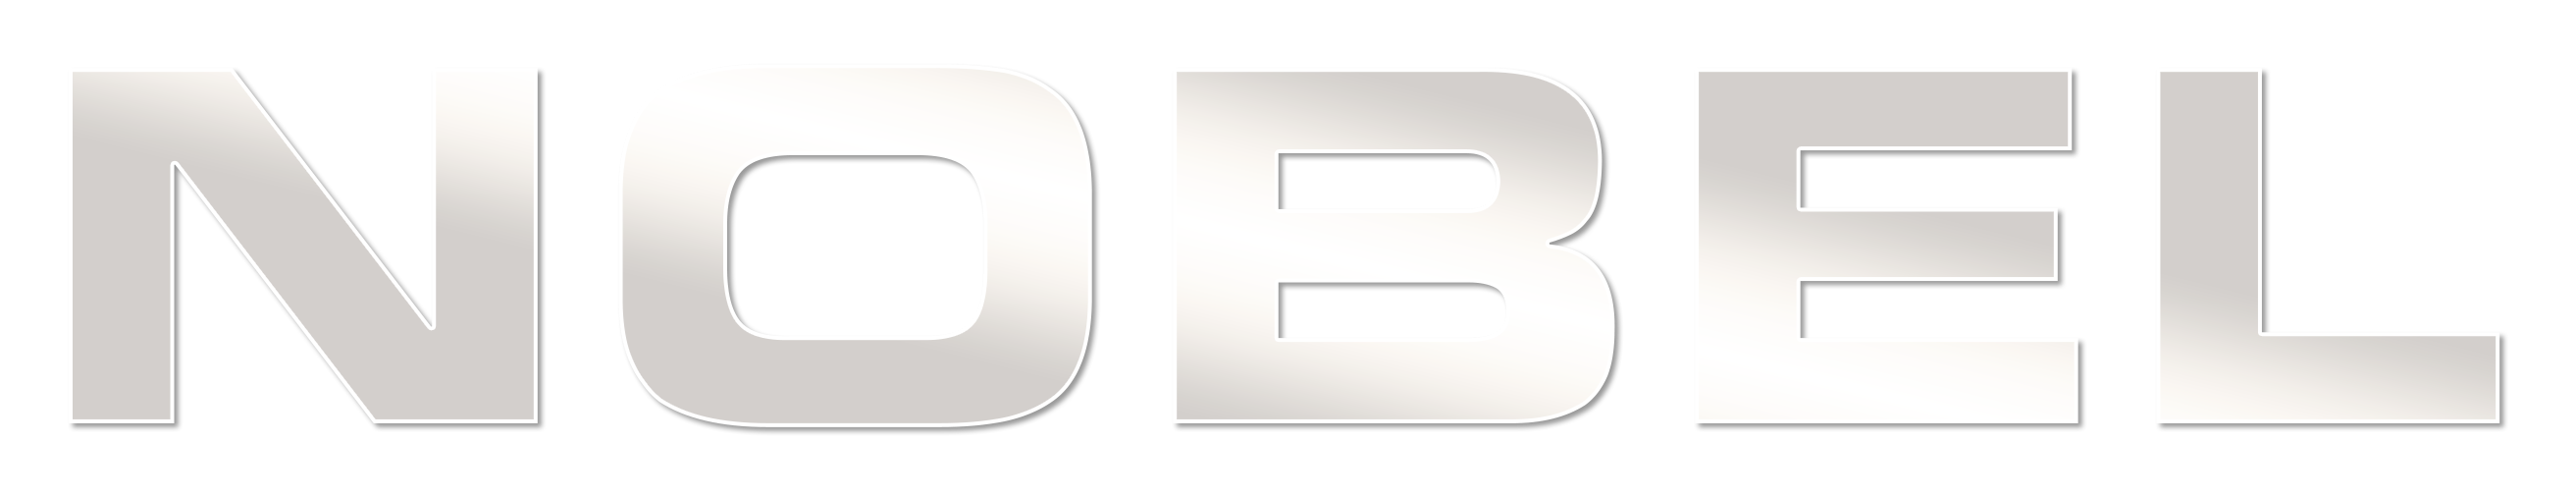 nobel logo